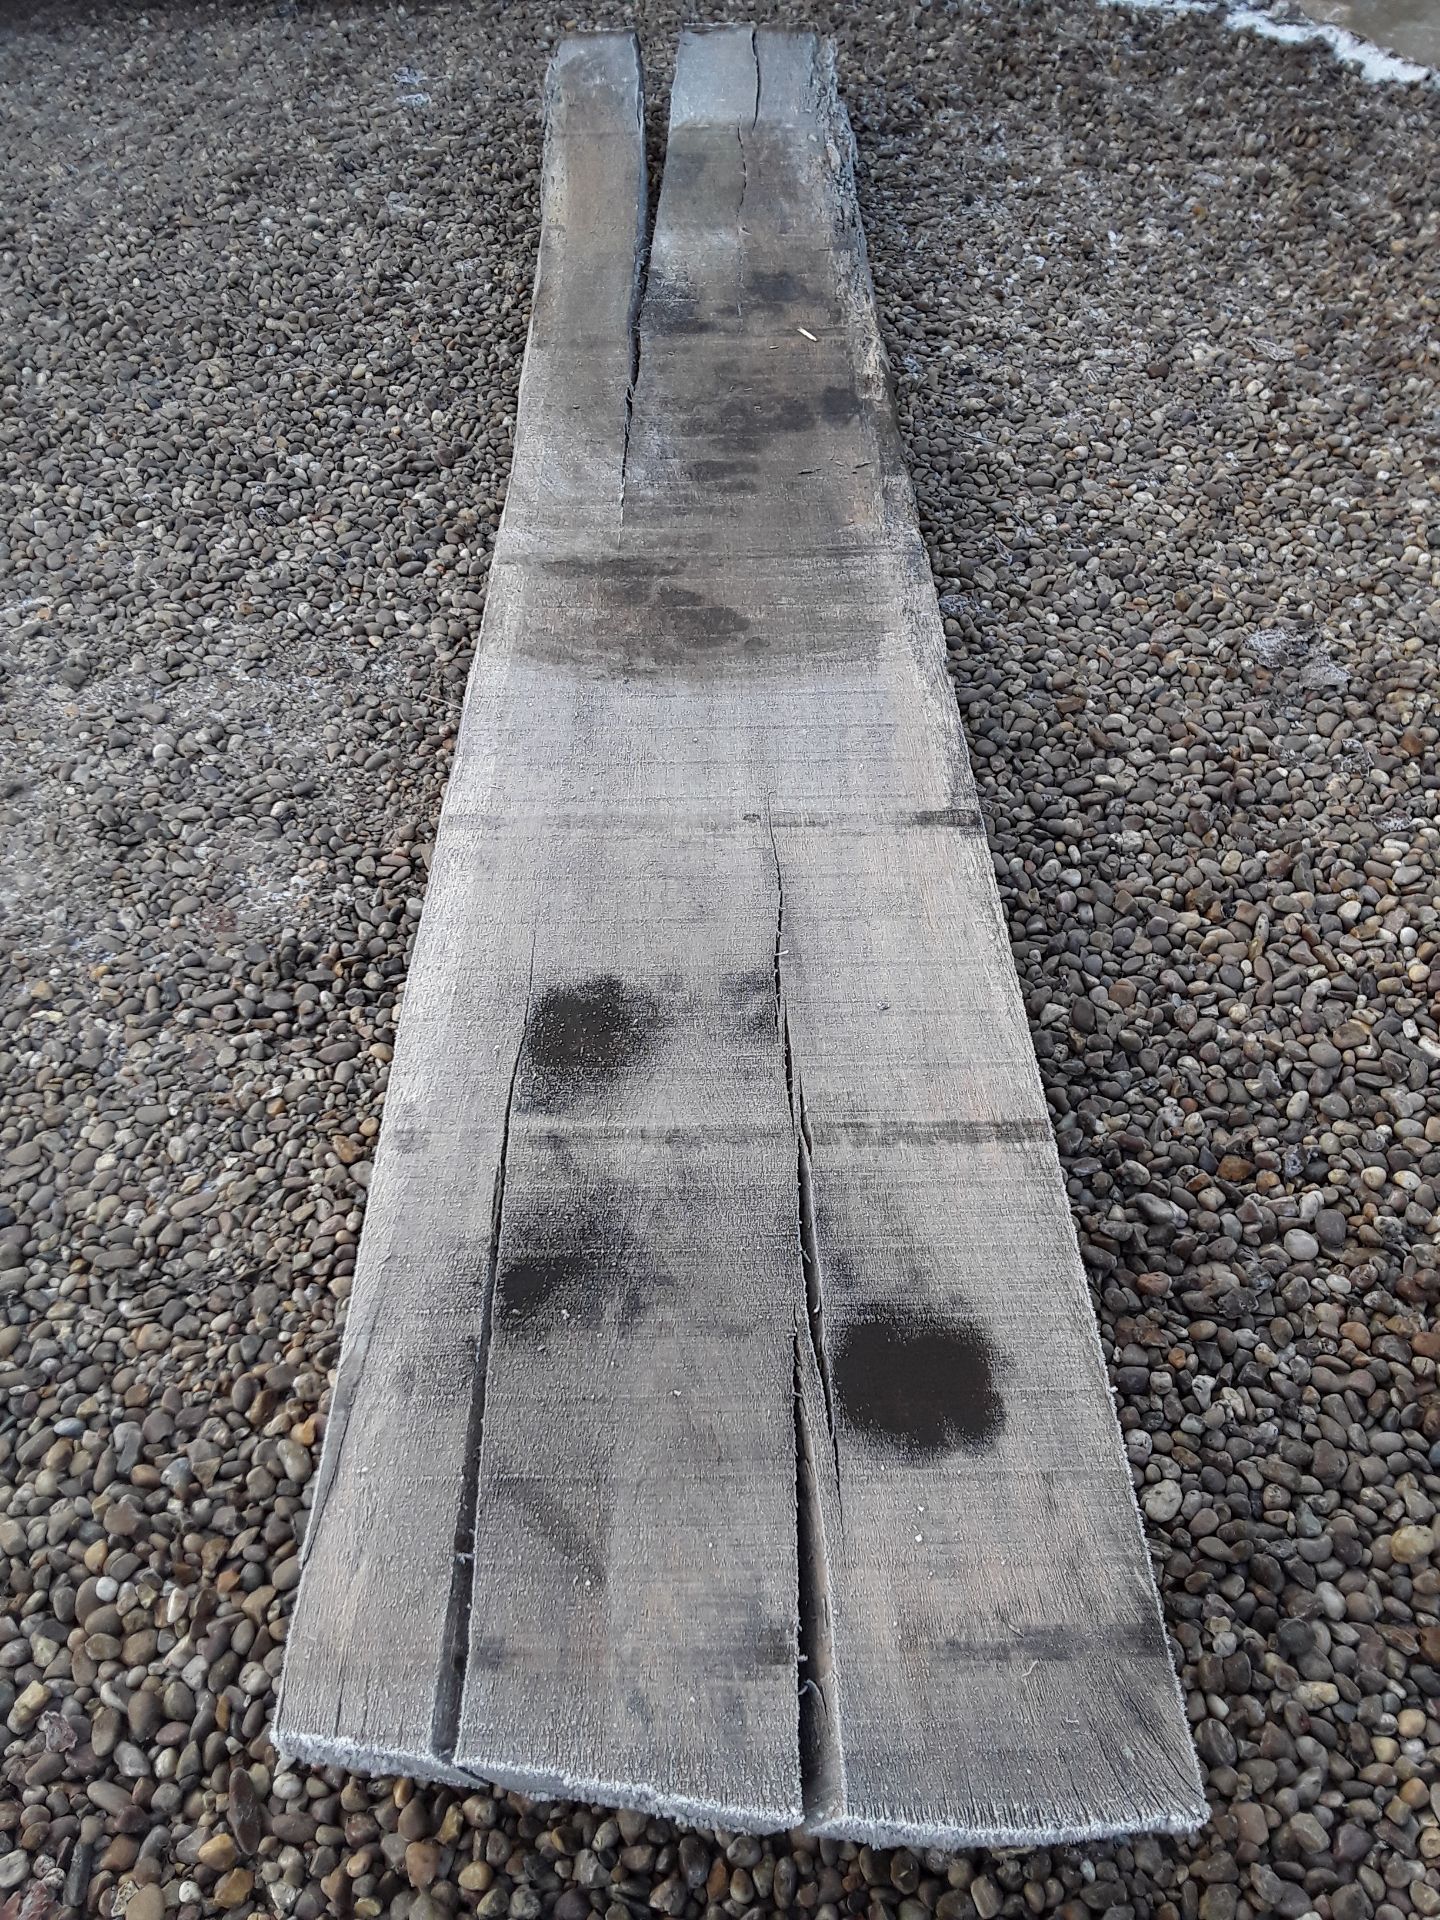 10 x Hardwood Timber Sawn Seasoned English Oak Waney Edge / Live Edge Boards/ Planks - Image 10 of 15